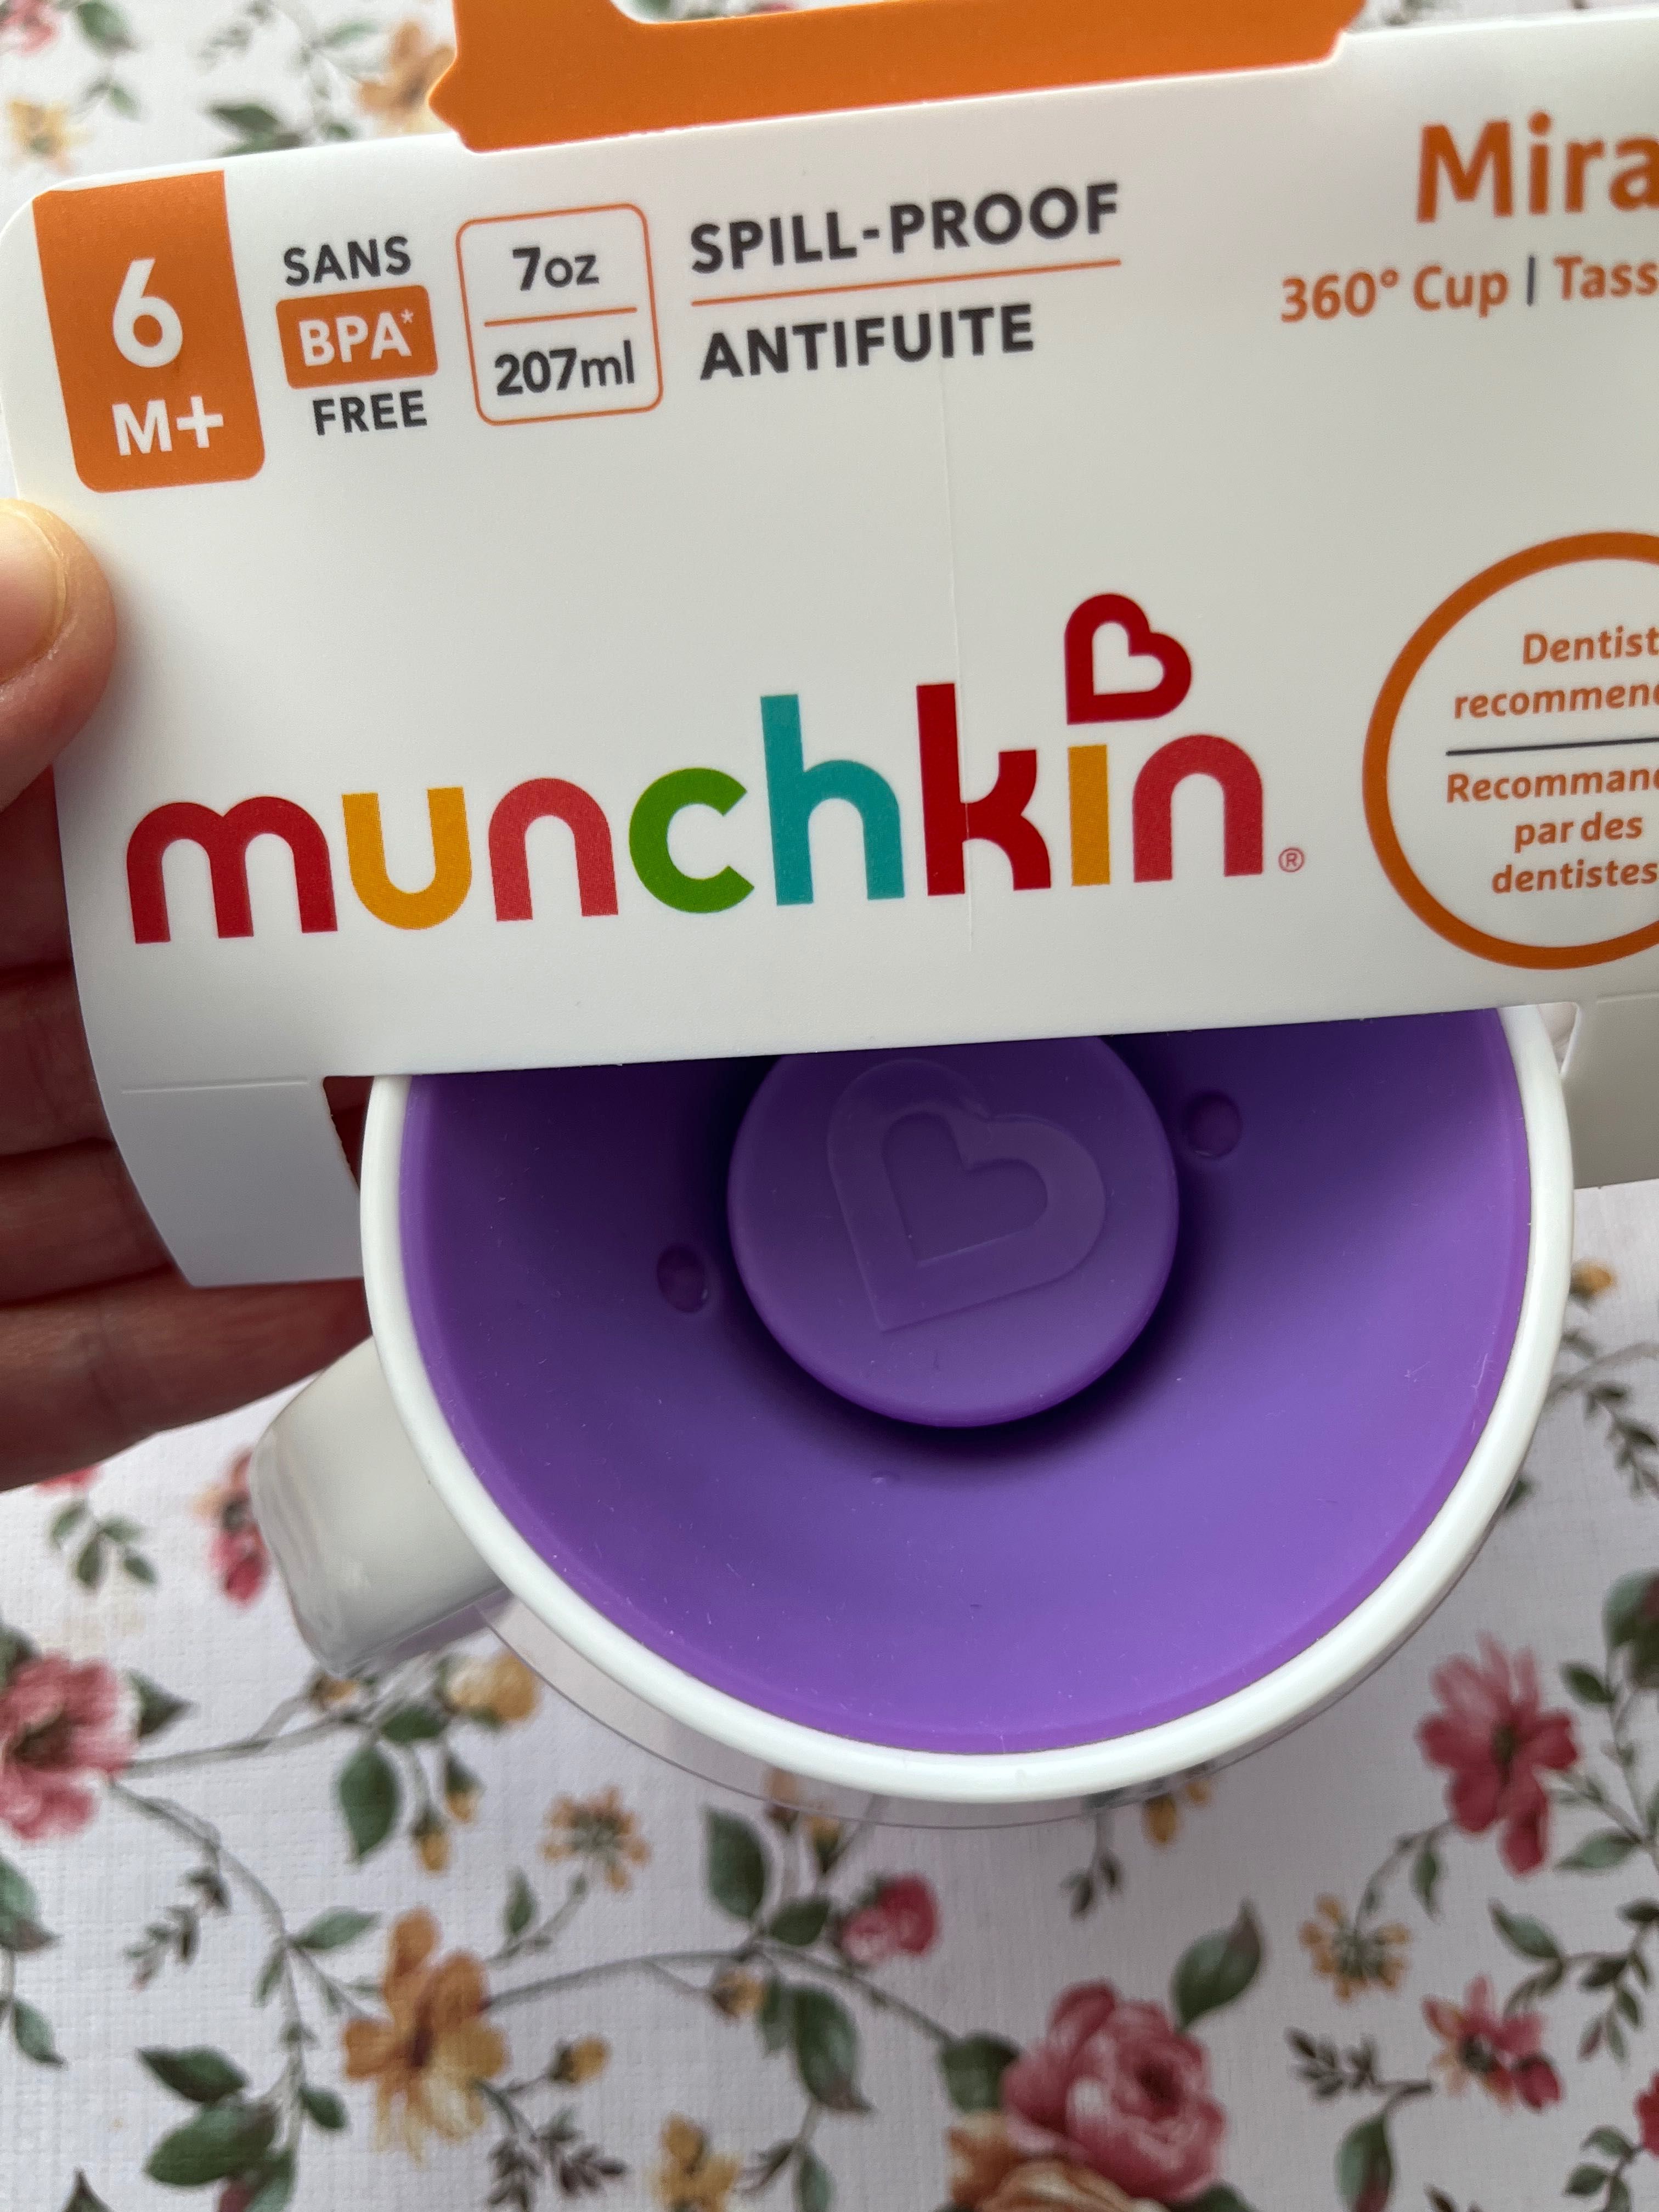 Cana premium Munchkin "Miracle 360° Cup", 6 luni +, culoare Mov